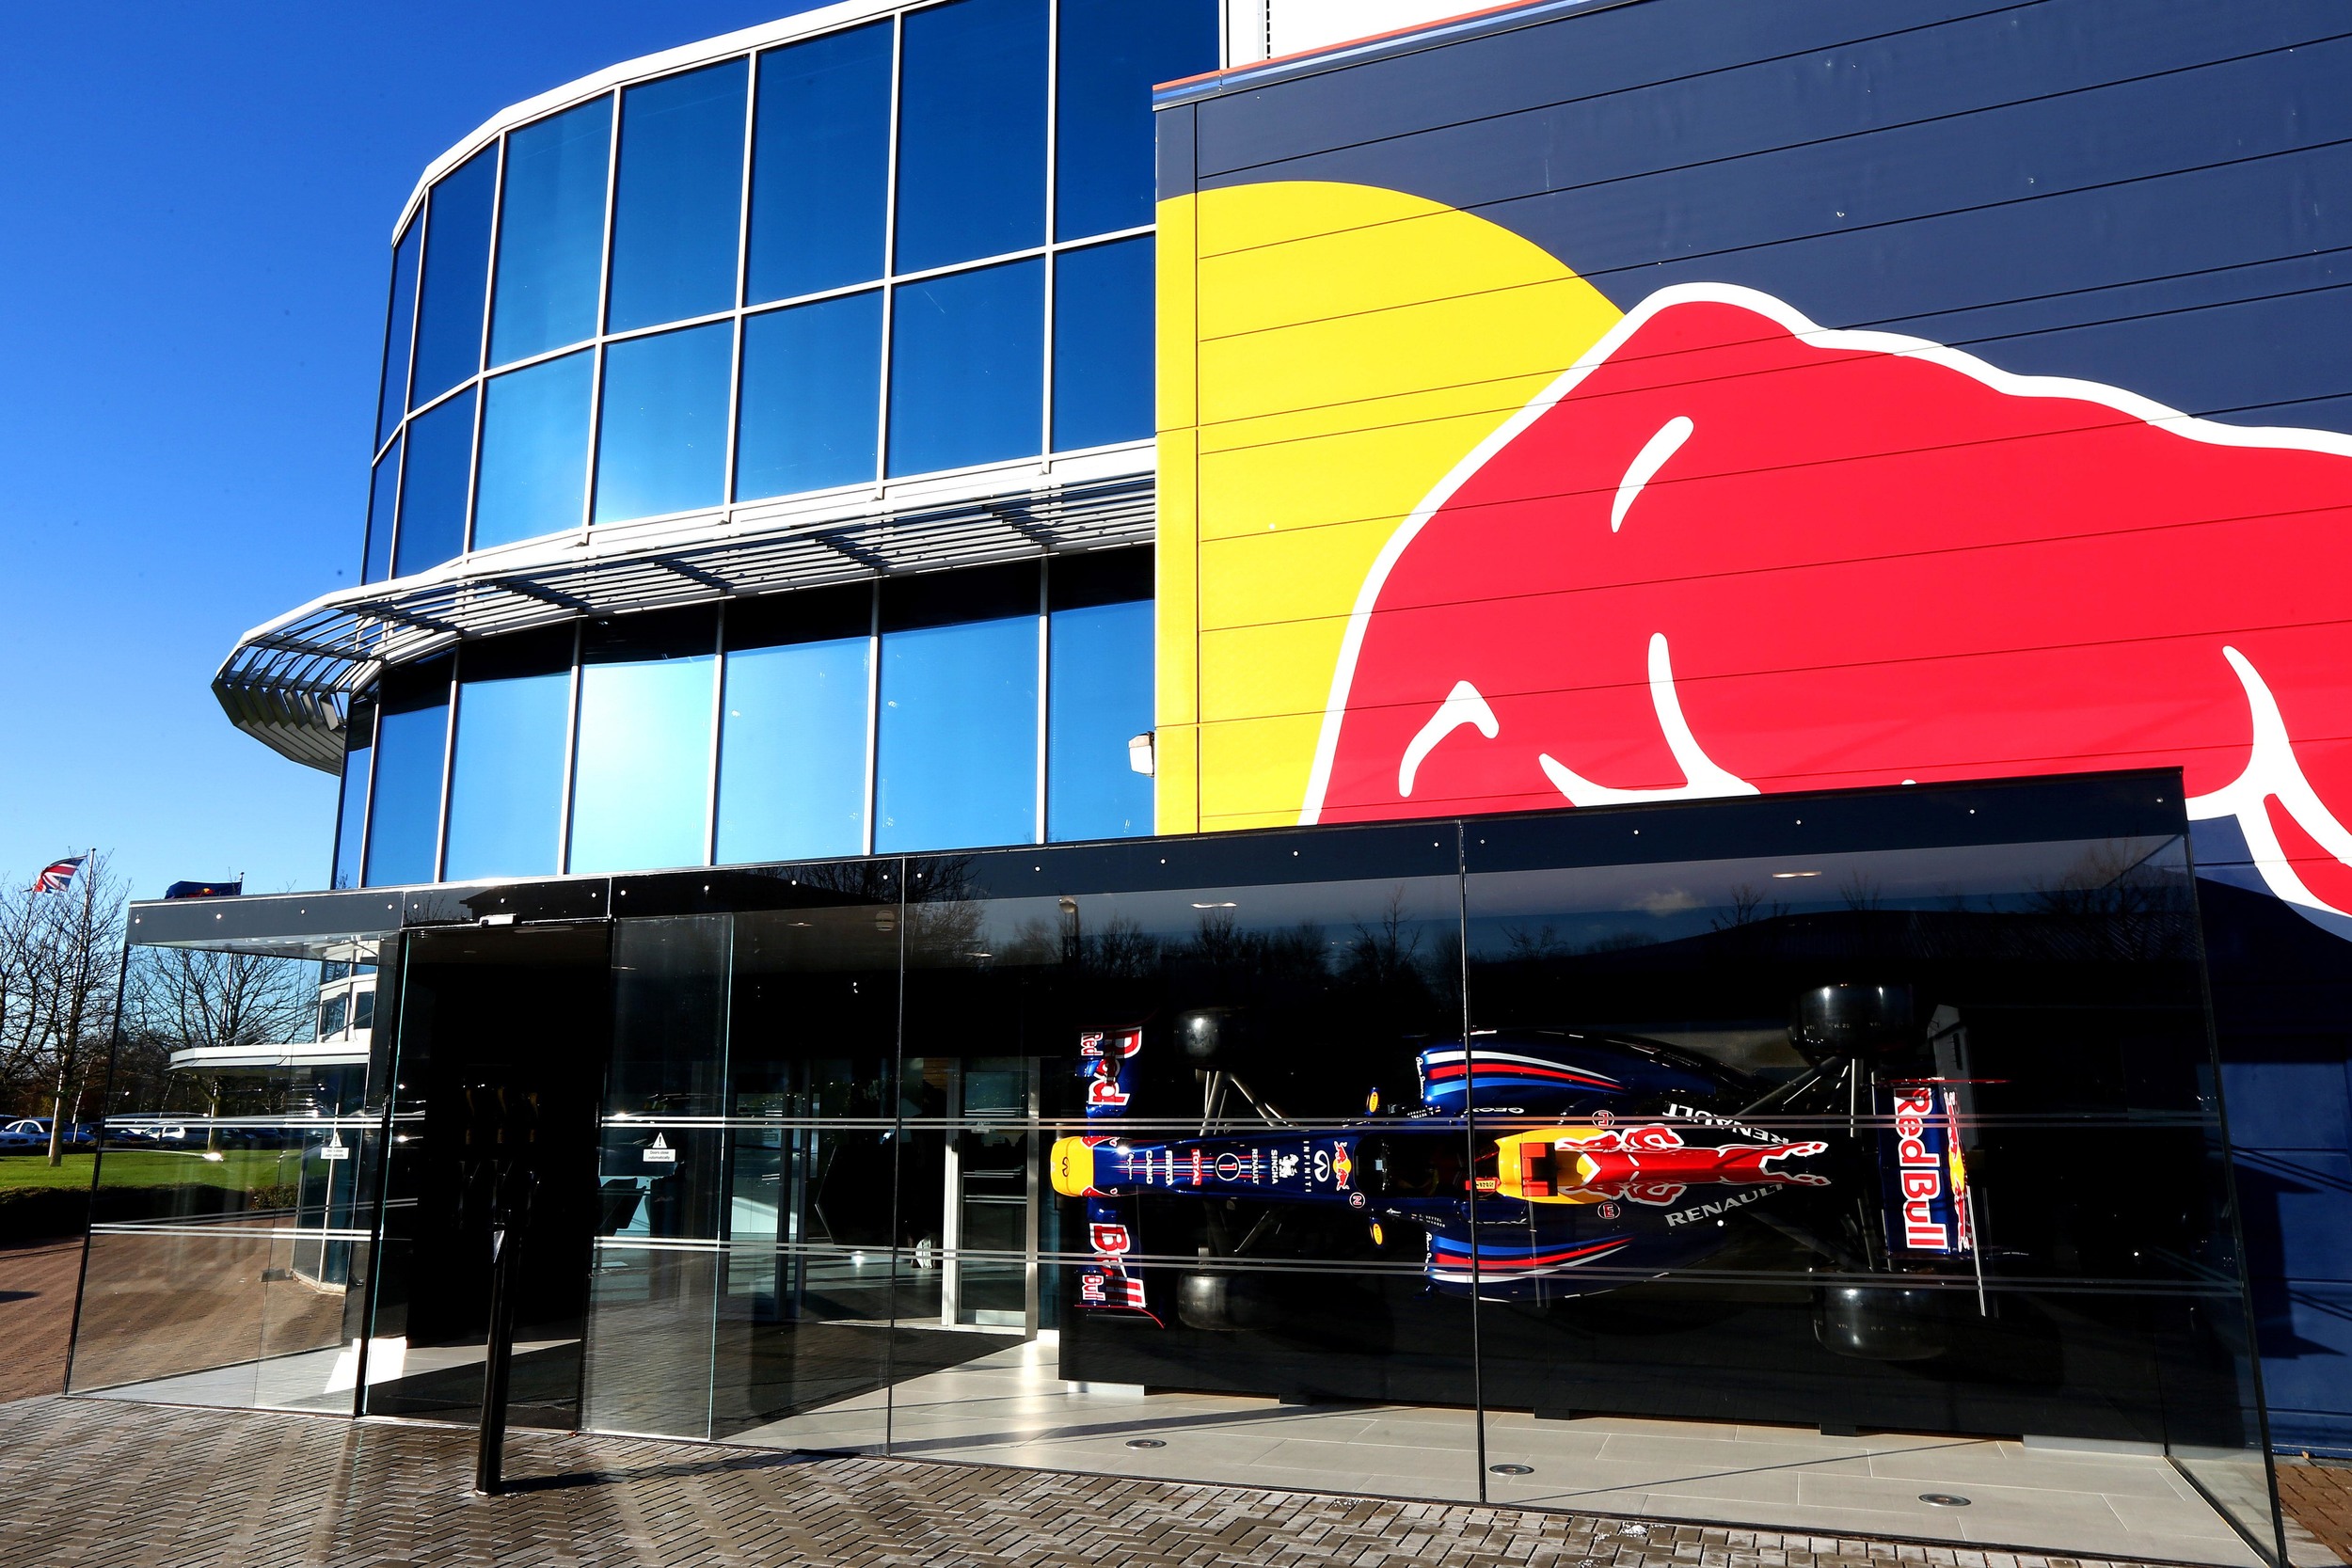 coping Rudyard Kipling jomfru Red Bull Racing Milton Keynes — Meson Electrical Services